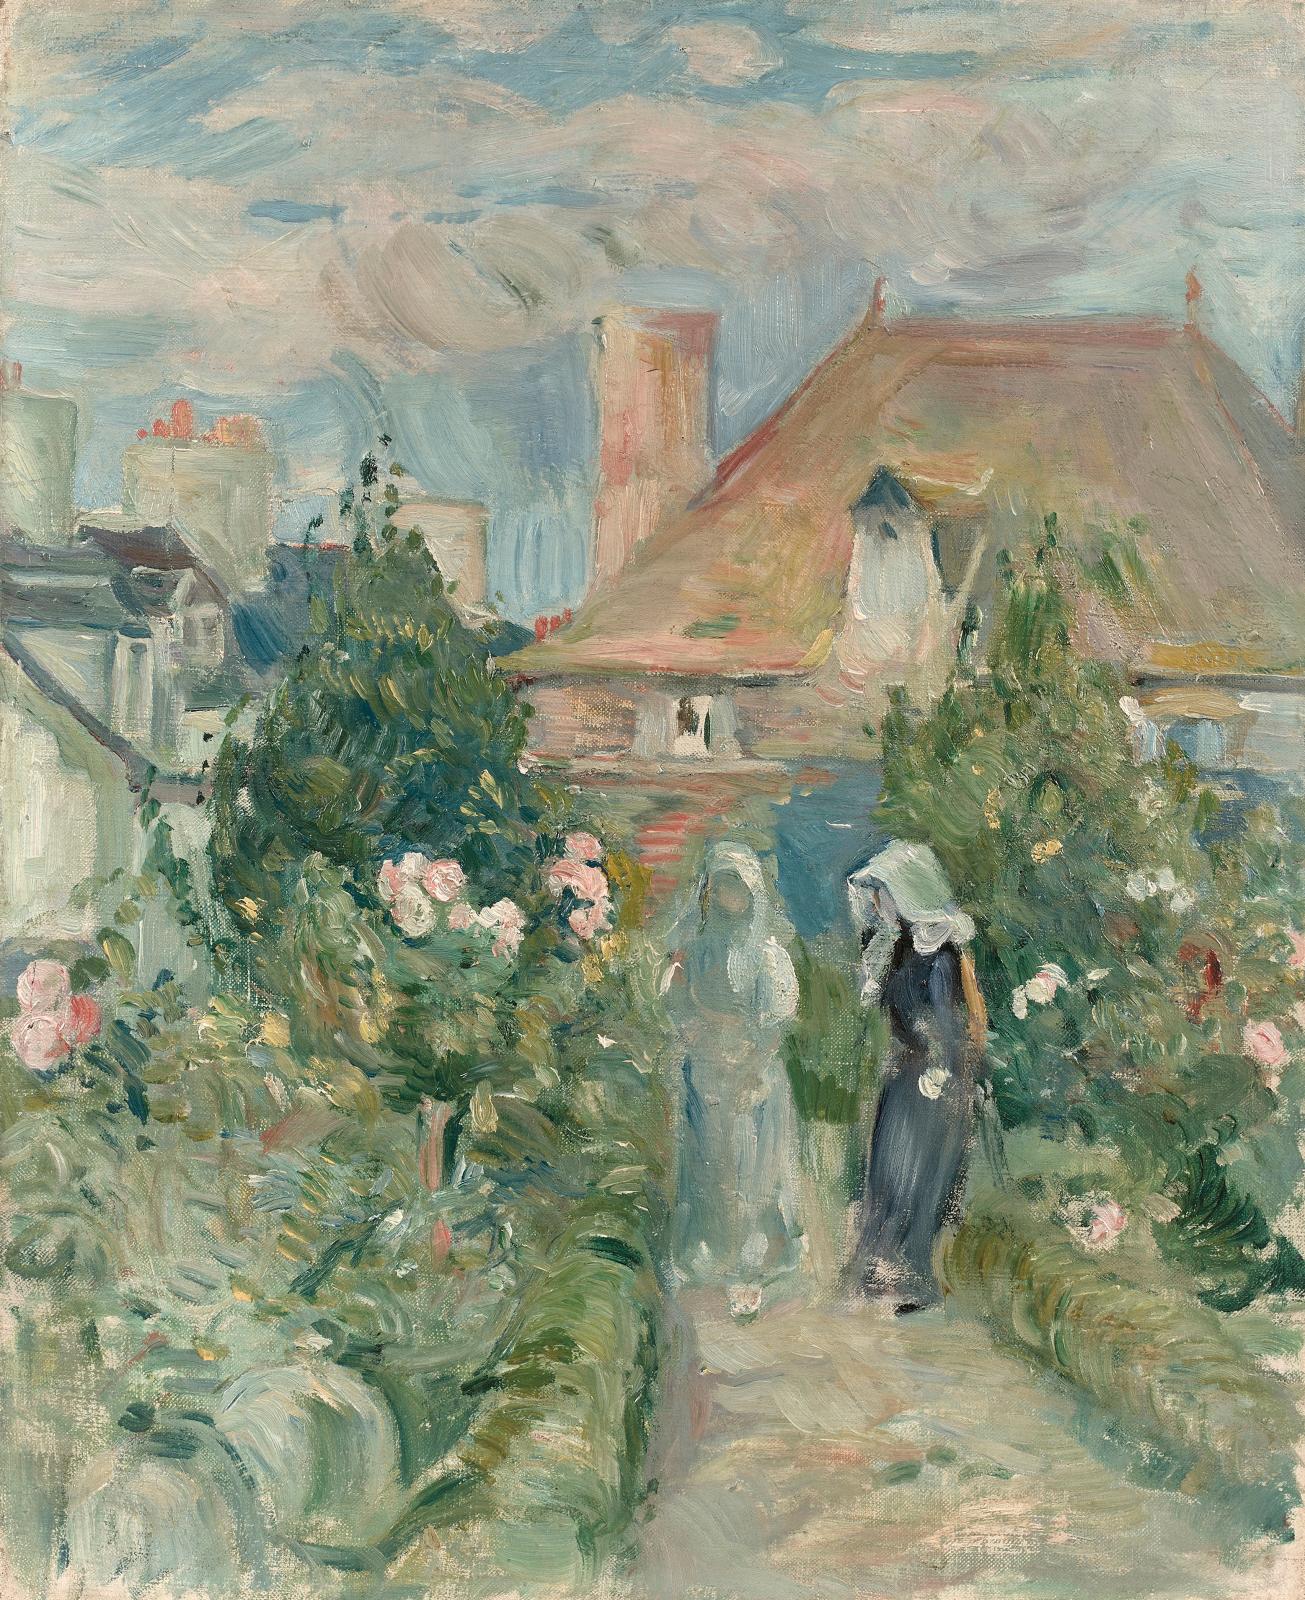 Berthe Morisot et Miró, Dufy, Renoir, Utrillo...